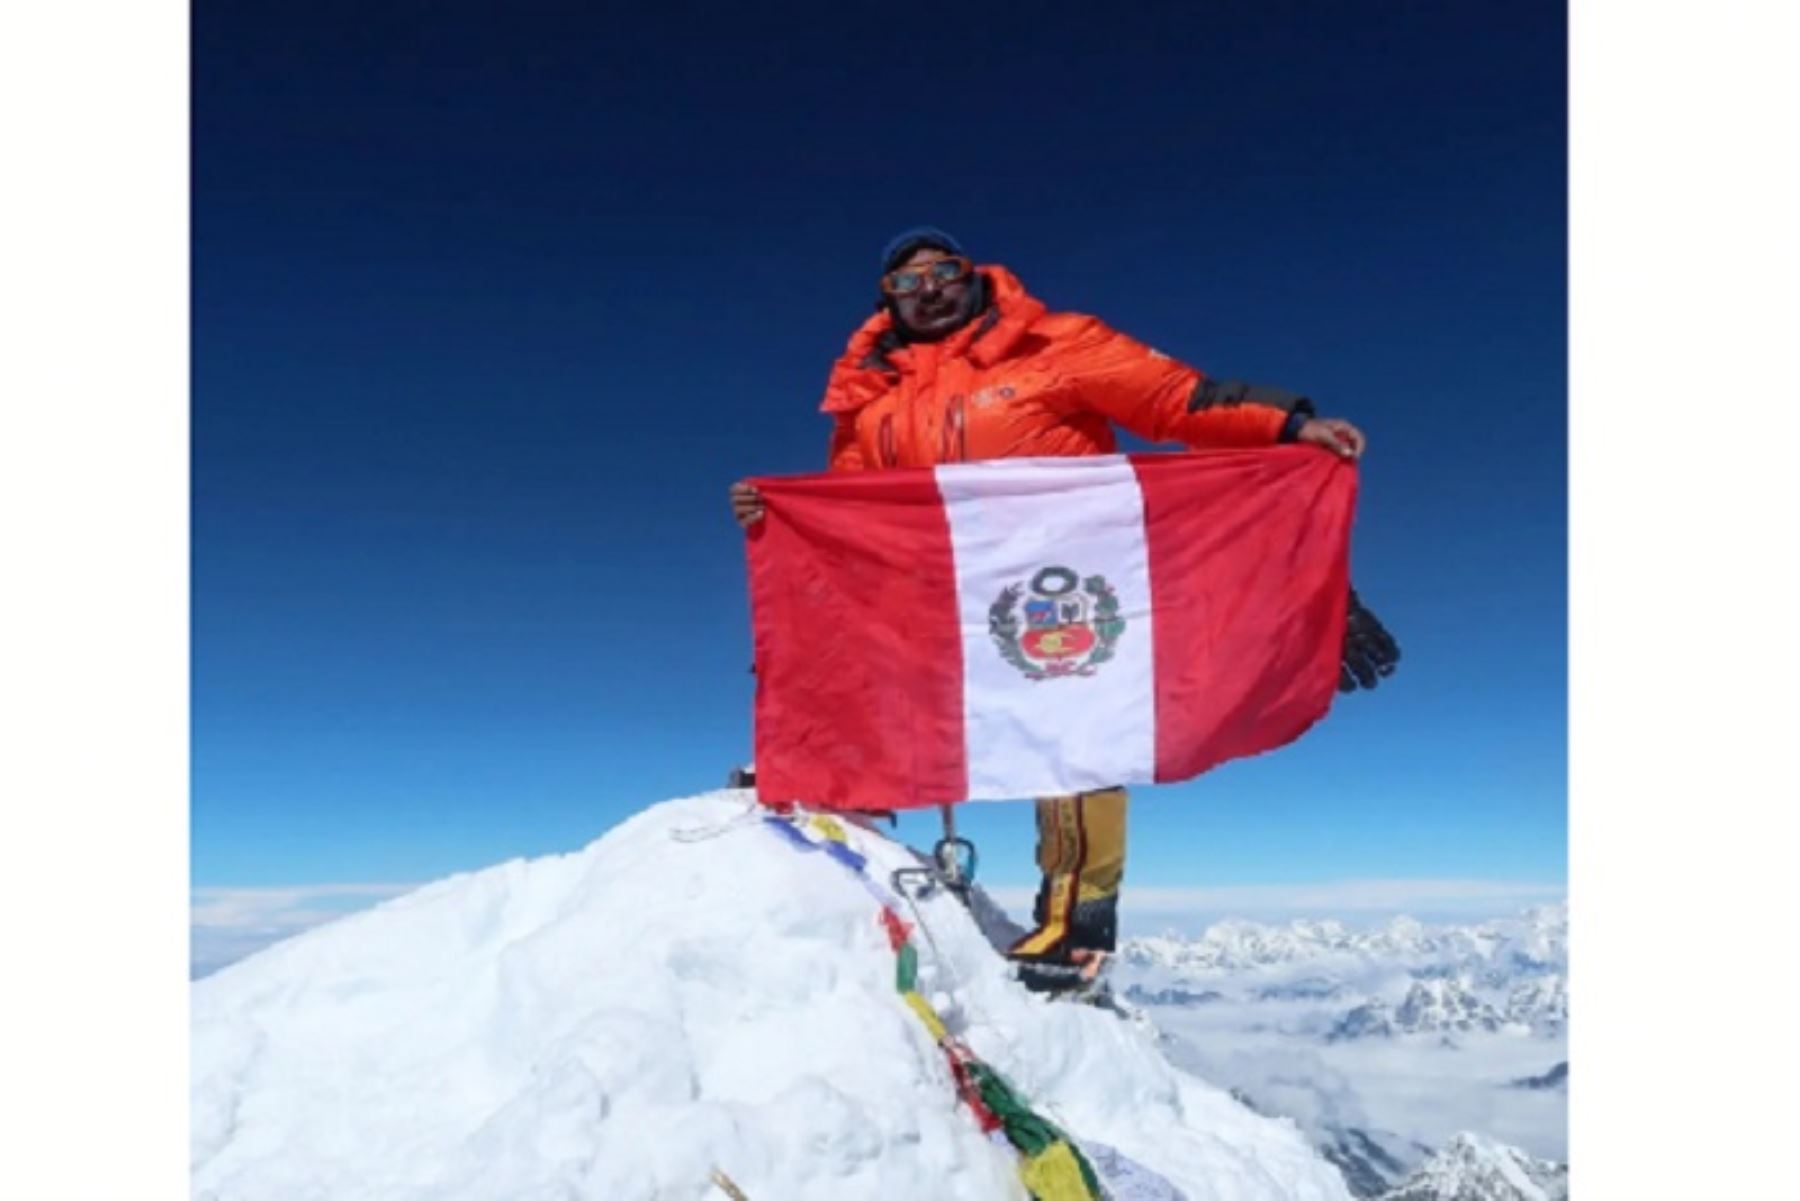 El andinista Víctor Rímac se ha propuesto lograr coronar las 14 cimas más altas del mundo como un reto personal. Hace unos días llegó a Lhotse, la cuarta montaña más alta del mundo, situada a 8,516 metros de altura, también en Nepal.